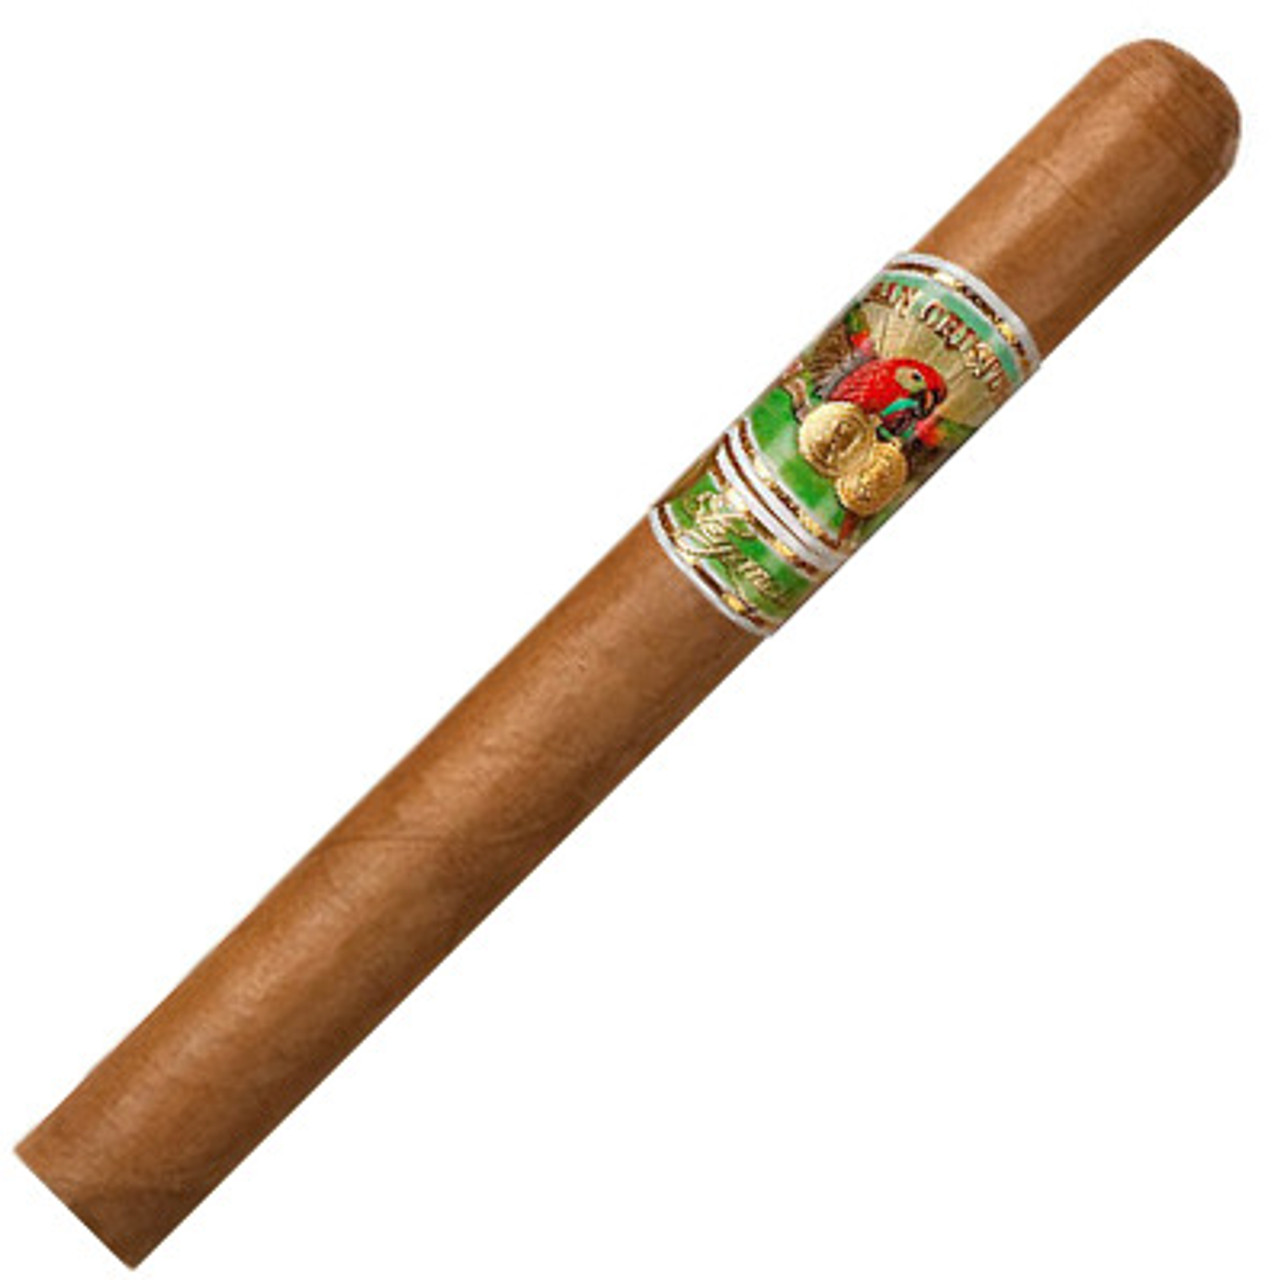 San Cristobal Elegancia Churchill Cigars - 7 x 50 (Box of 25)